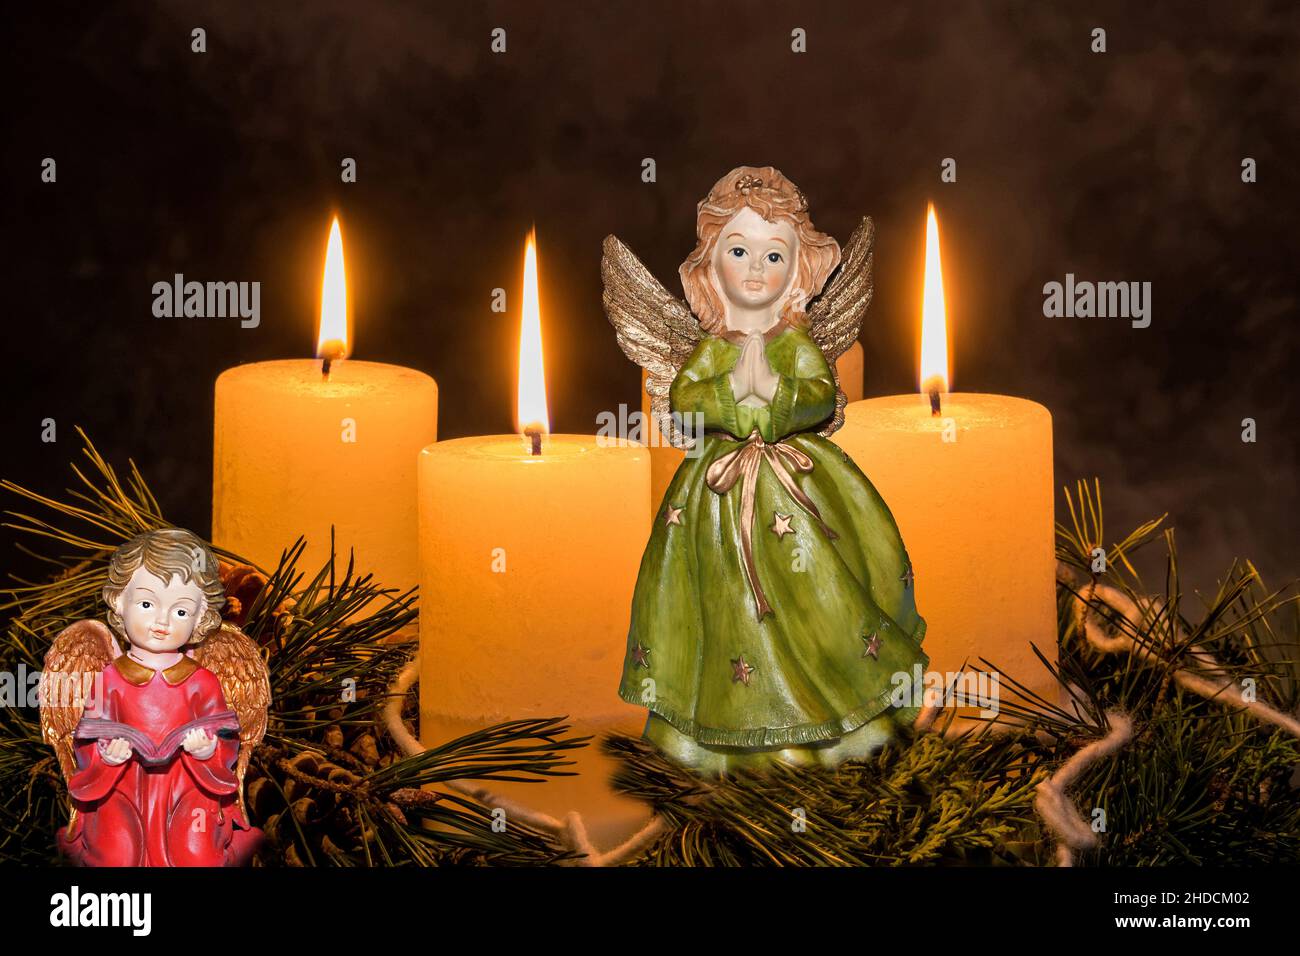 Ein Adventskranz zu Weihnachten sorgt für romatinsche Stimmung in der stillen Advent Zeit, 3. Advent, drei brennende Kerzen, ENGEL, Weihnachtsengel, Stock Photo